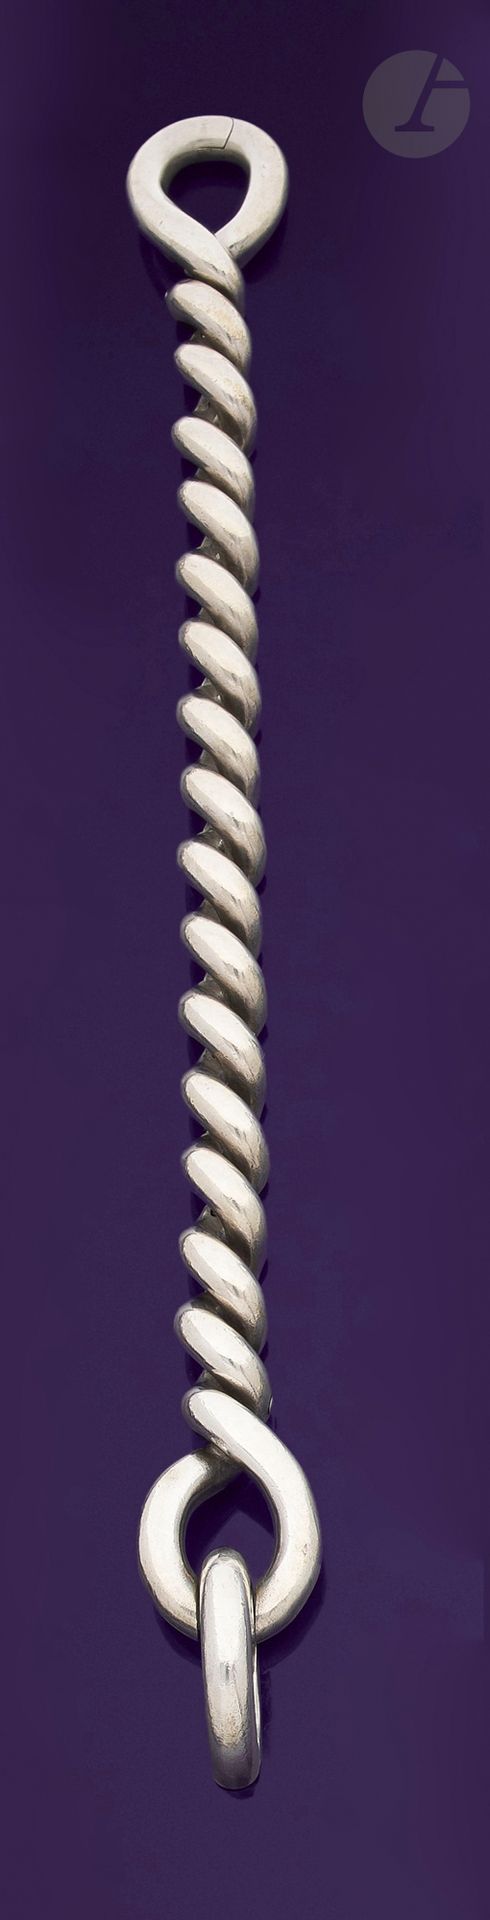 Null 爱马仕
扭曲的银手镯。已签名。法国作品。长度：19厘米左右。重量：86.2克

一条爱马仕银手链